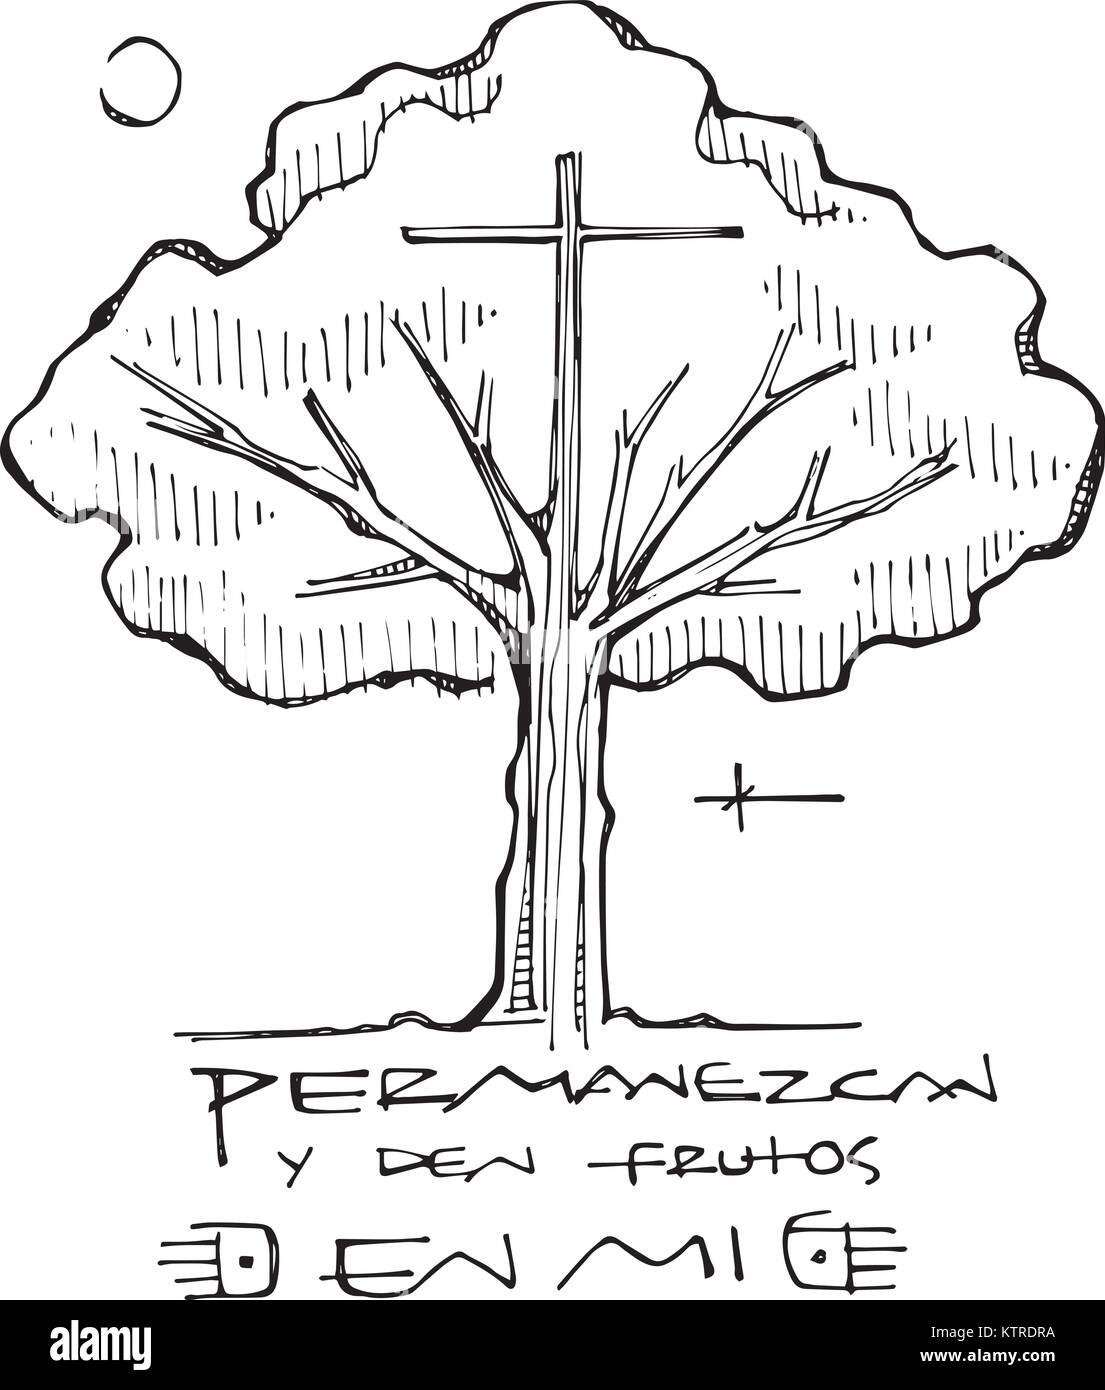 Hand gezeichnet Vektor Tinte Abbildung oder Zeichnung eines religiösen Kreuz, ein Baum und ein Satz auf Spanisch heißt das: In mir bleiben und Frucht bringt Stock Vektor